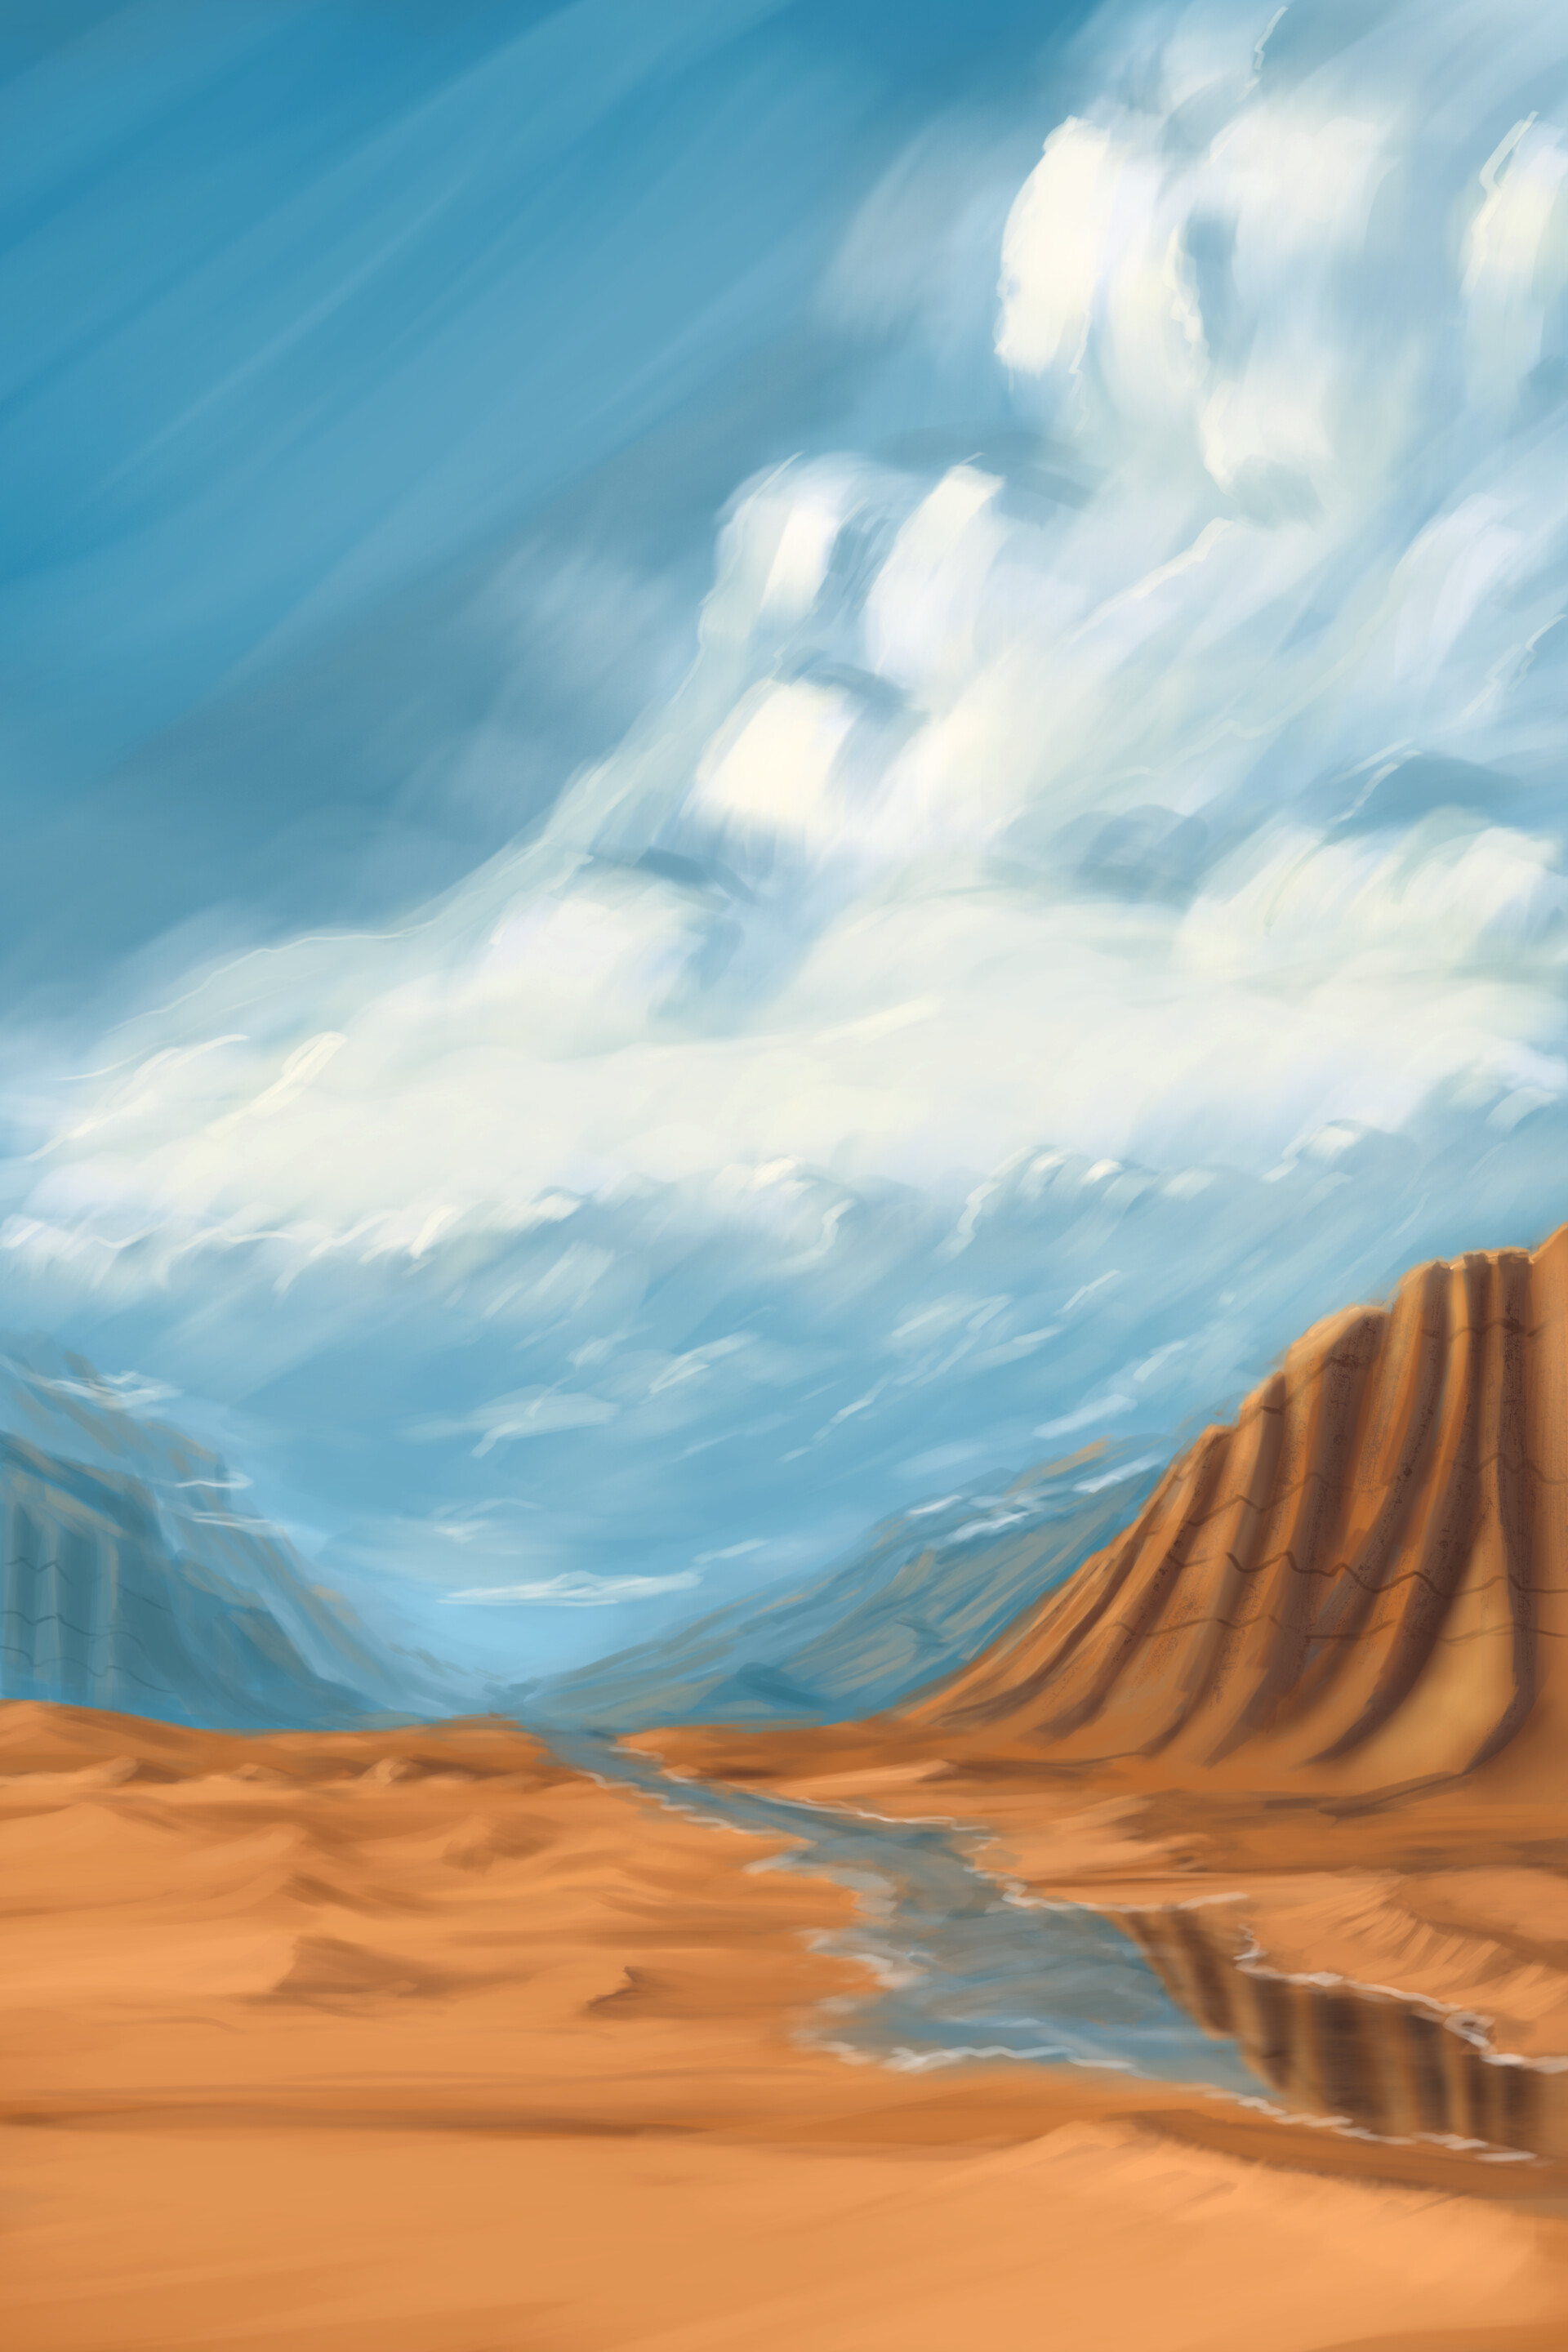 Khi nhìn vào hình ảnh Thiên đường sa mạc này, bạn sẽ cảm nhận được sự hoang sơ và đầy thách thức của sa mạc. Đây là một môi trường hoàn hảo cho những người yêu thích thể loại khám phá, phiêu lưu. Hãy để cho hình ảnh này giúp bạn truyền cảm hứng và khám phá những điều mới mẻ hơn.